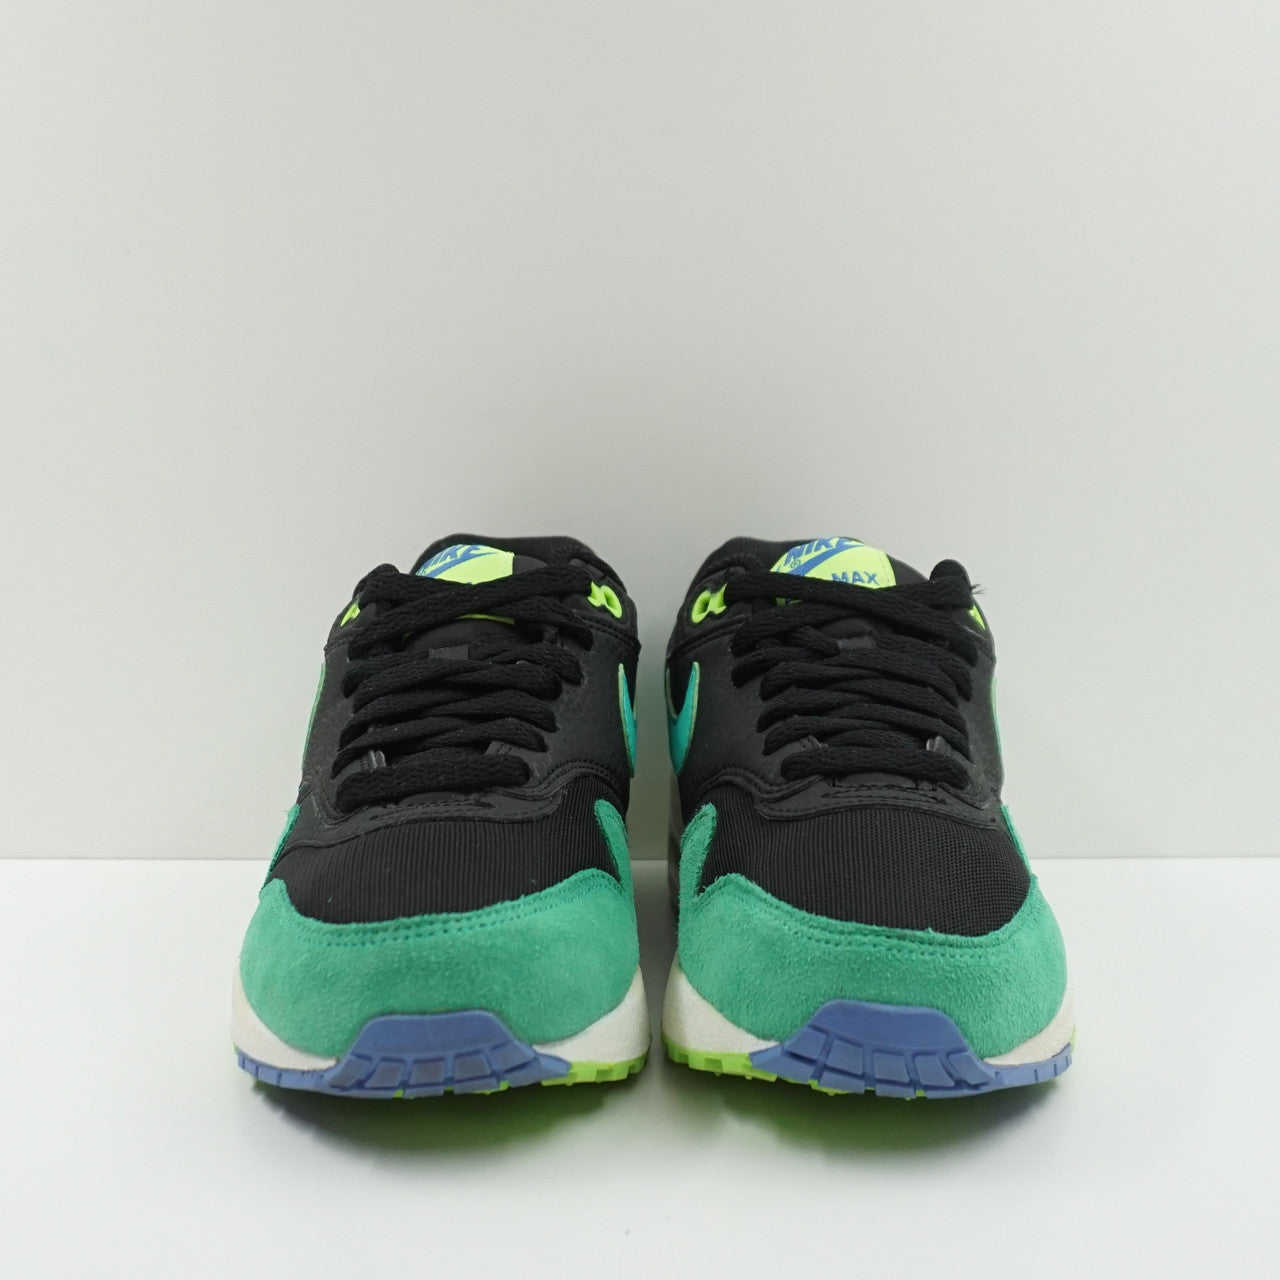 Nike Air Max 1 Essential Green Black (W)